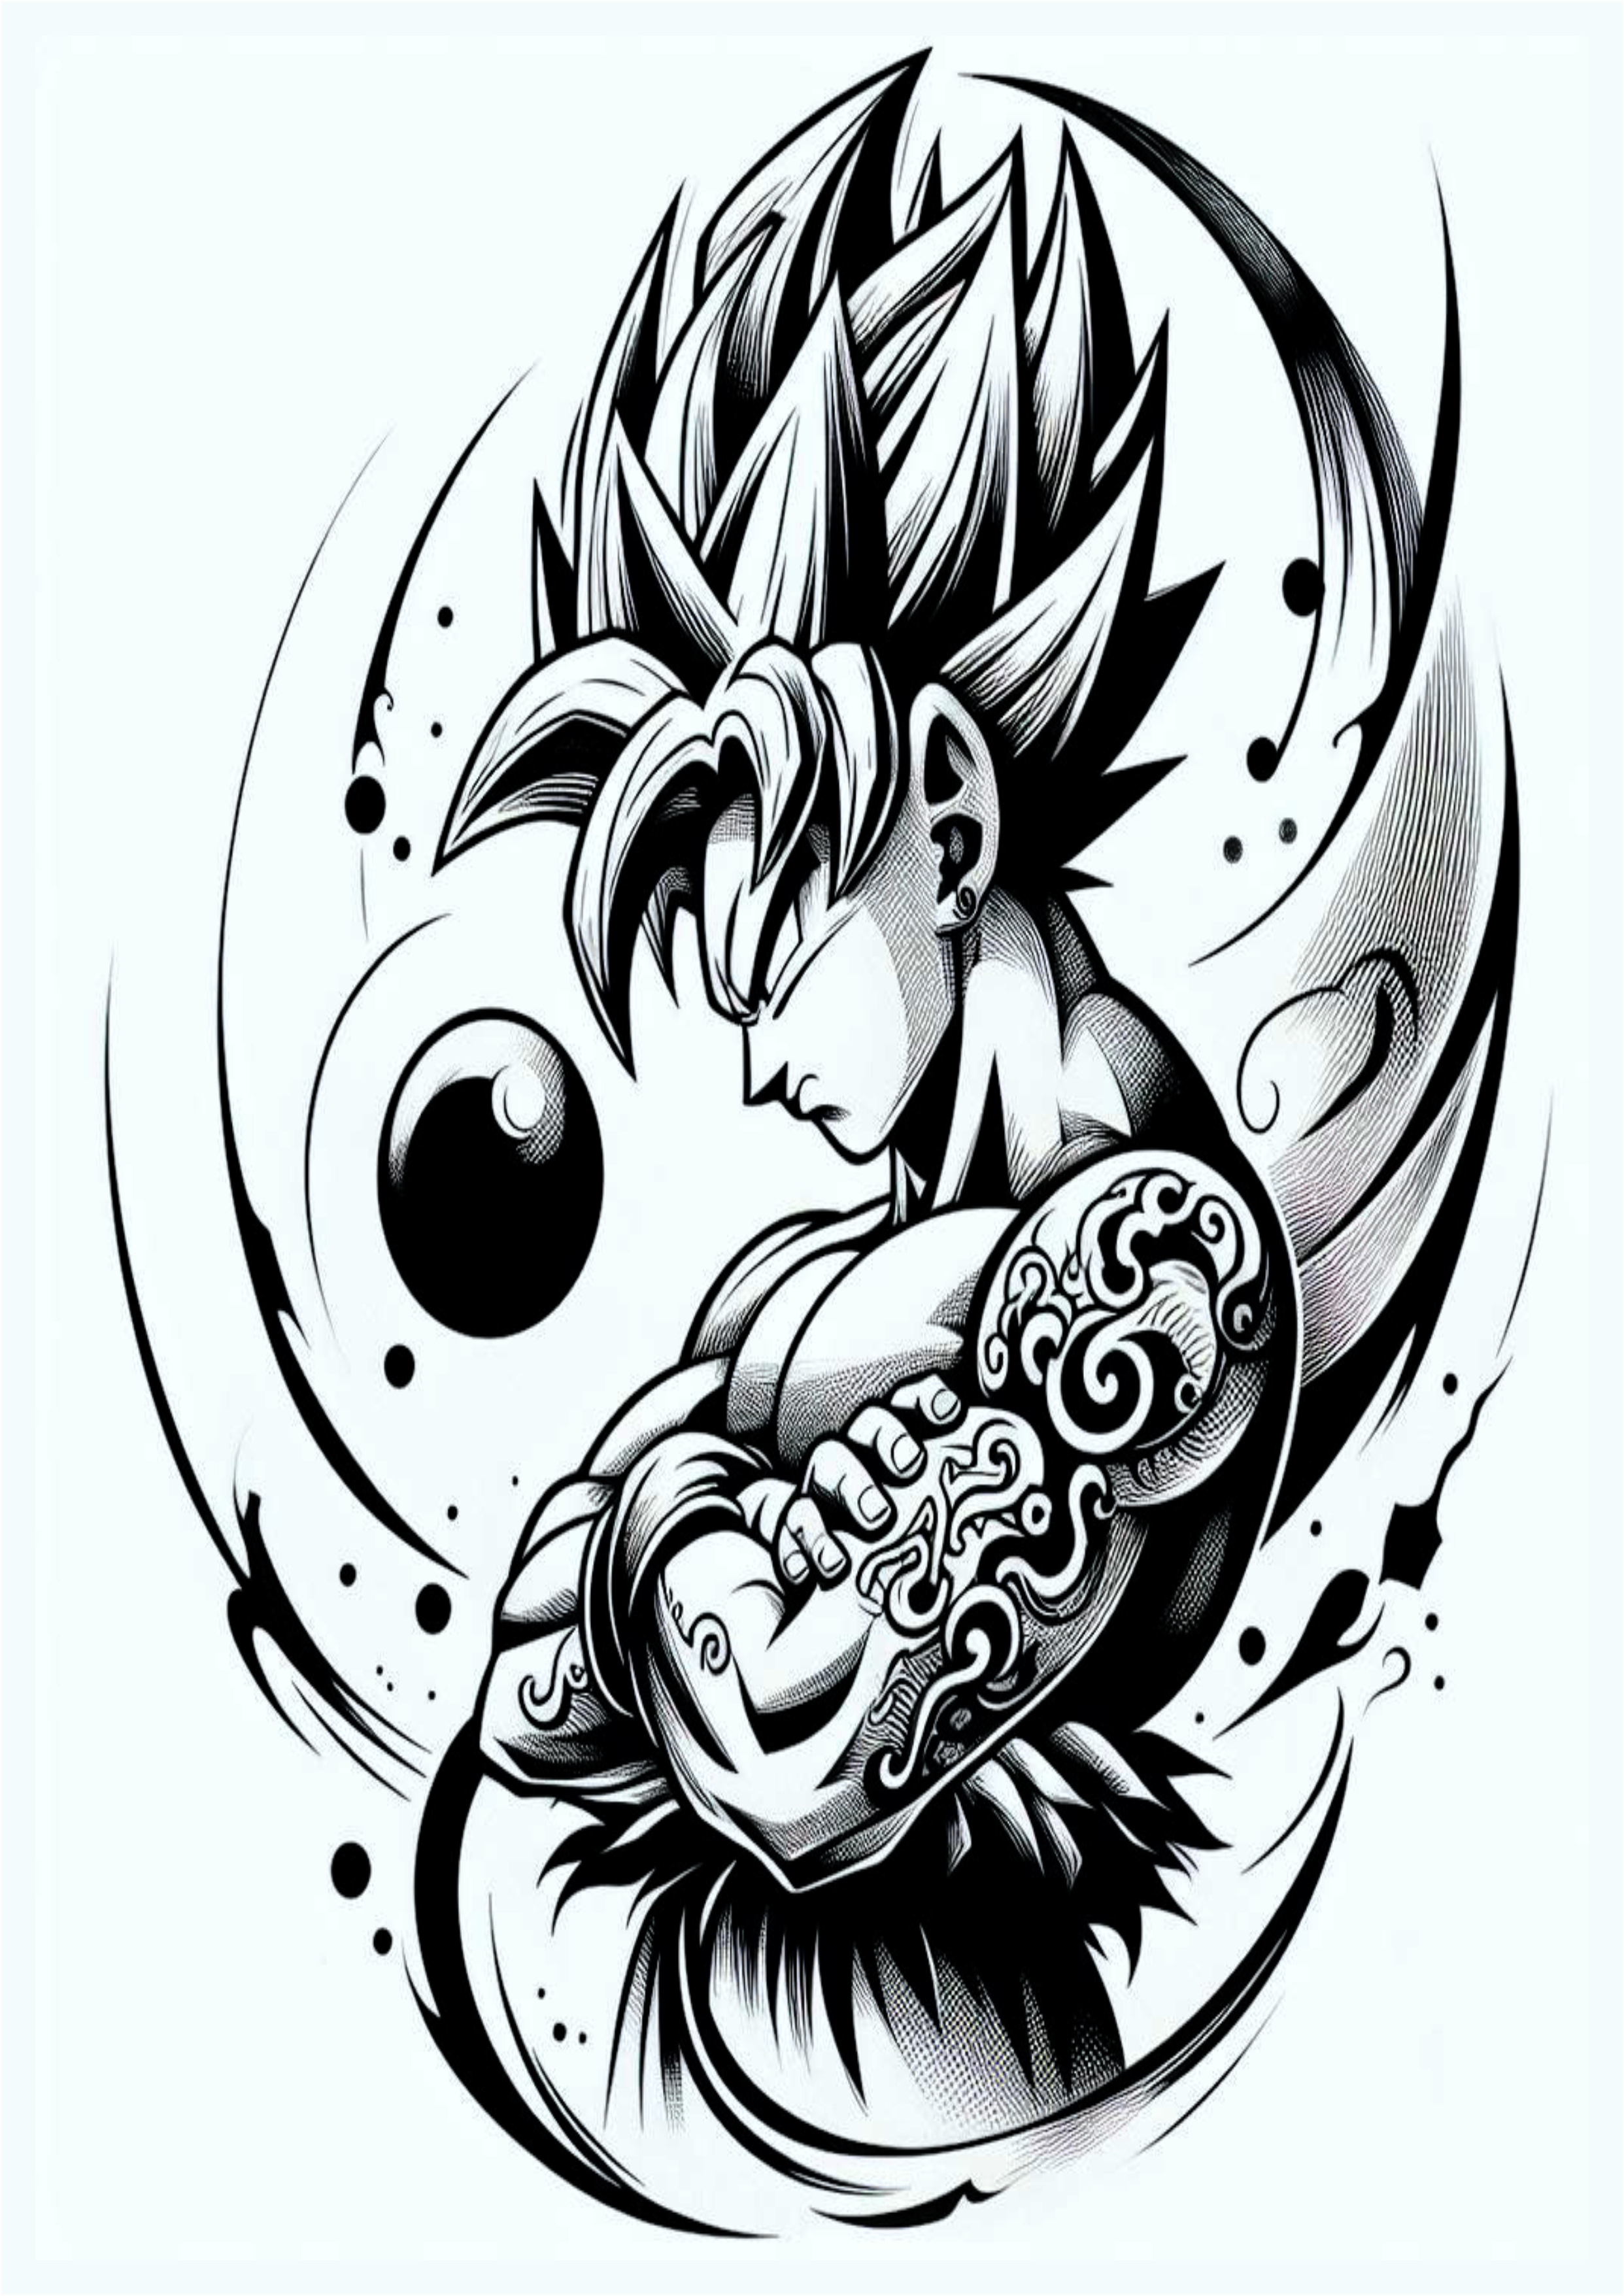 Desenho de Dragon ball Z Goku black feito a mão ideia para tatuagem monocromática anime esferas do dragão png